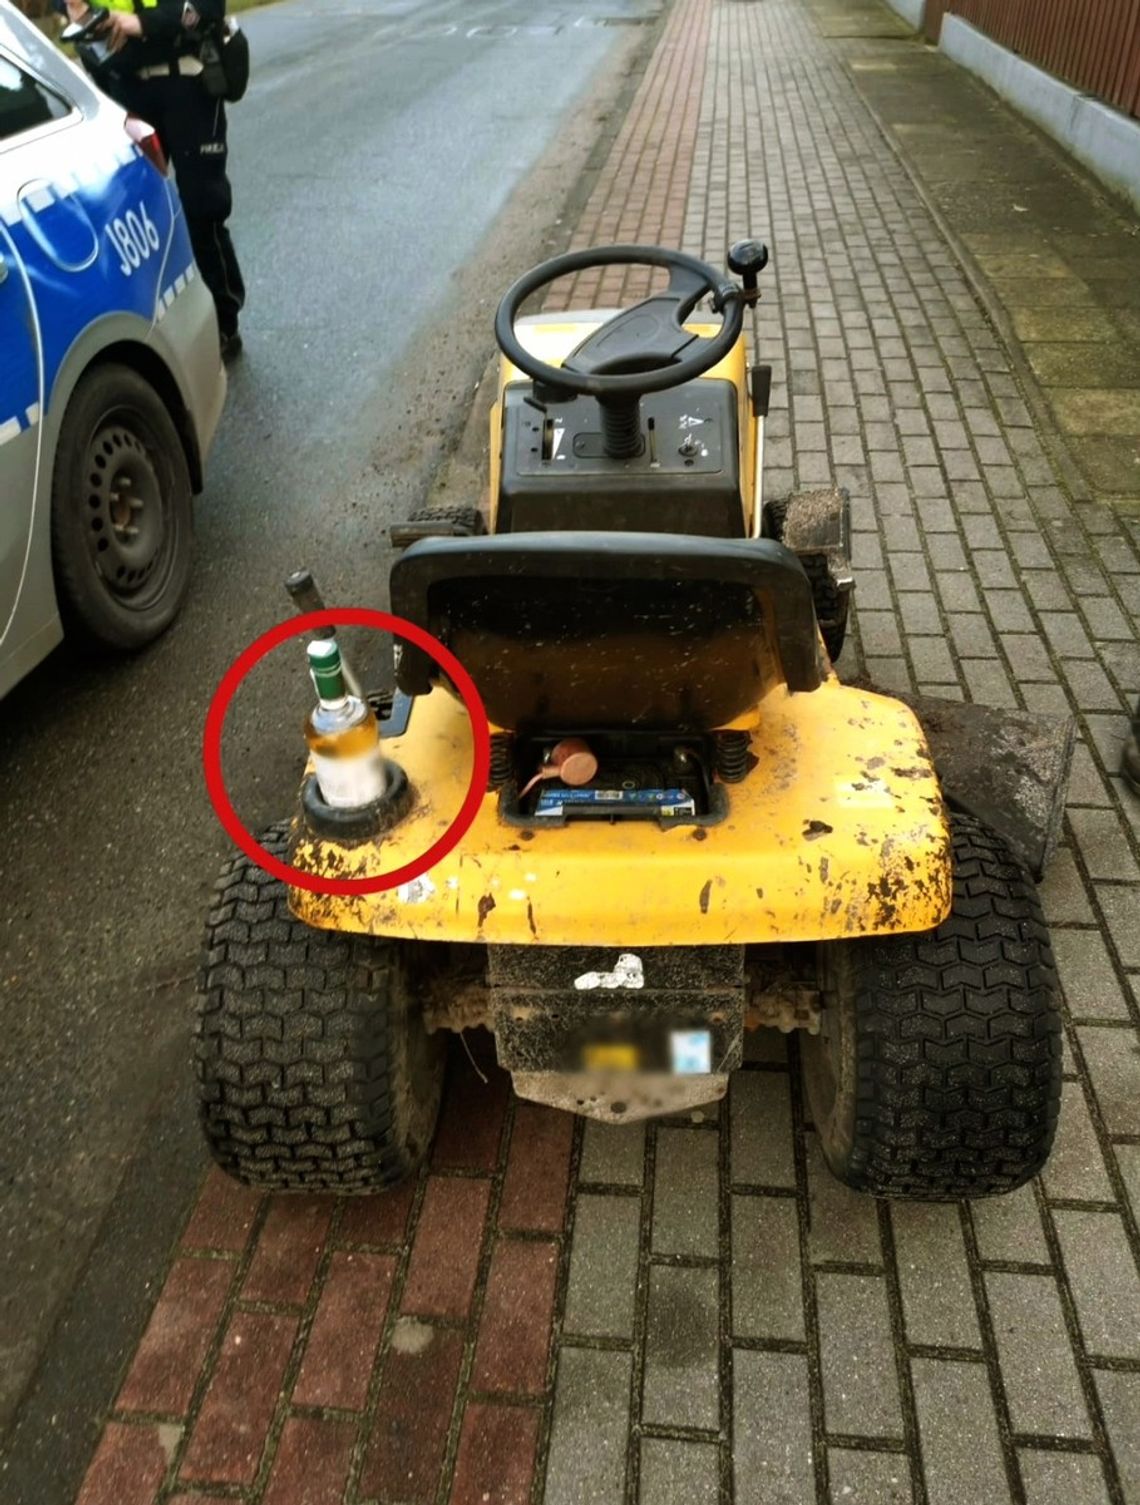 Dostał dożywotni zakaz prowadzenia. Złapali go, gdy pijany jechał po chodniku traktorkiem ogrodowym